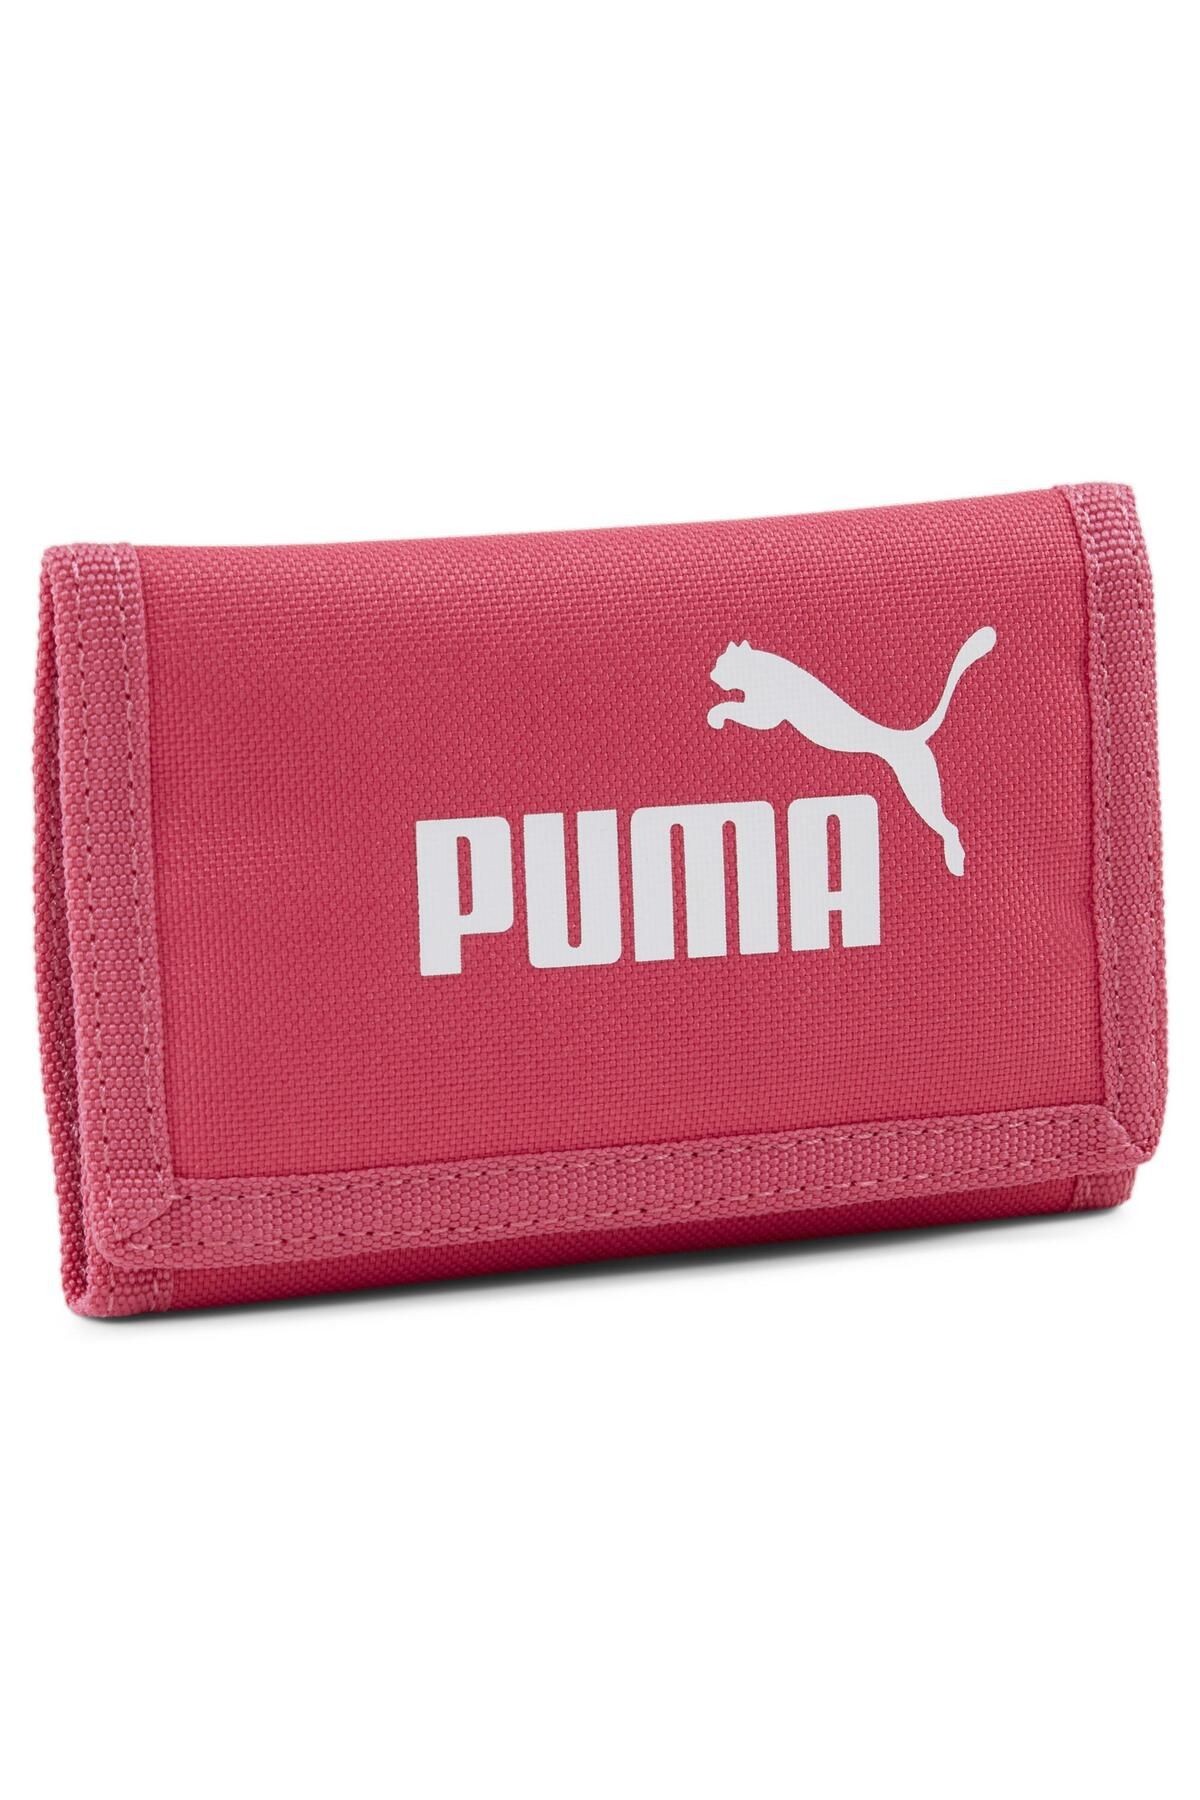 Puma Phase Wallet Kadın Cüzdan